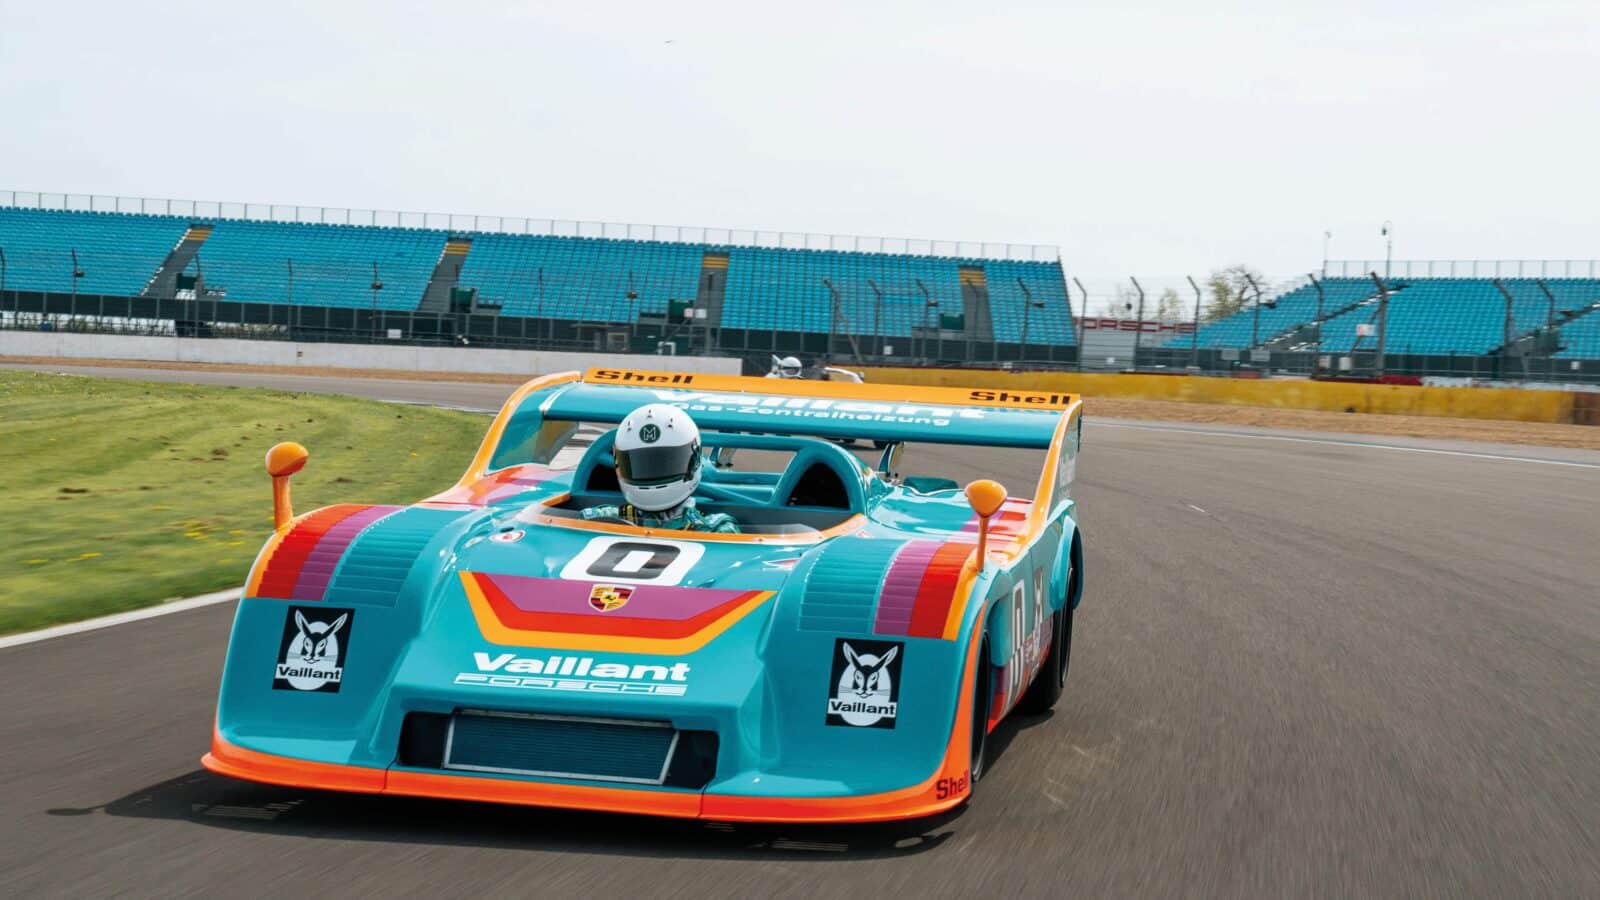 Porsche 917 front Race car of the century